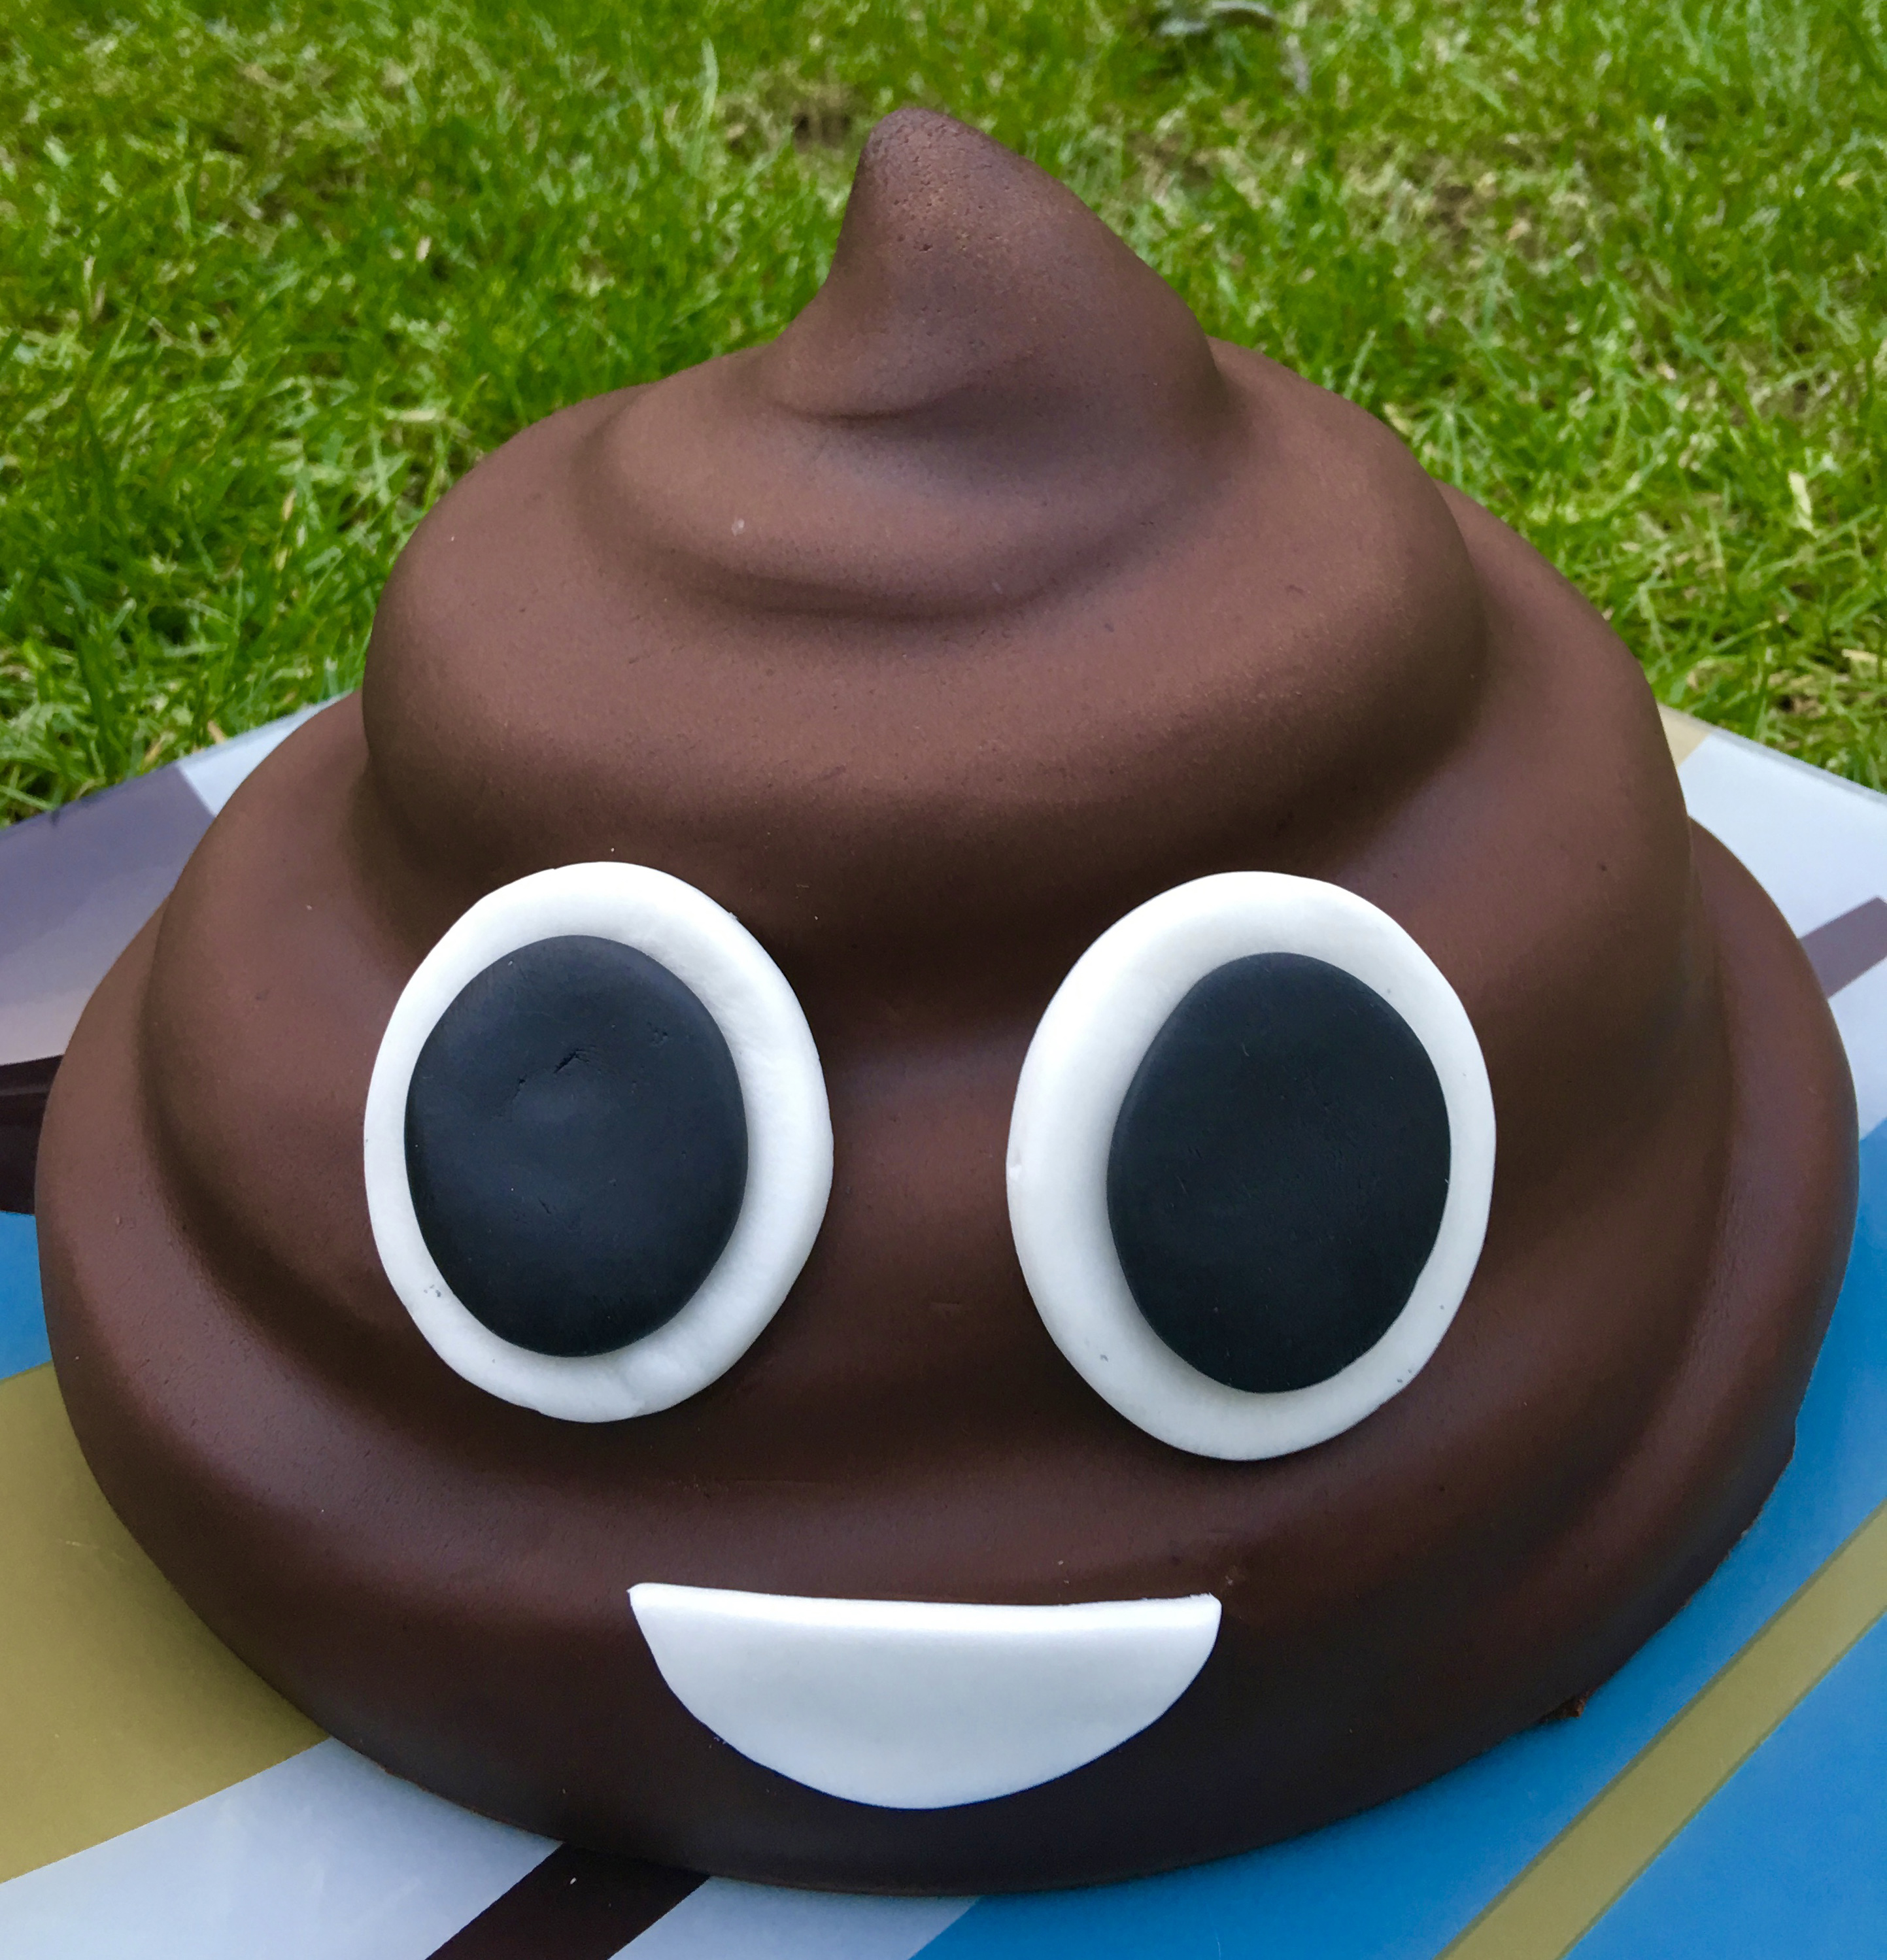 Poop emoji cake